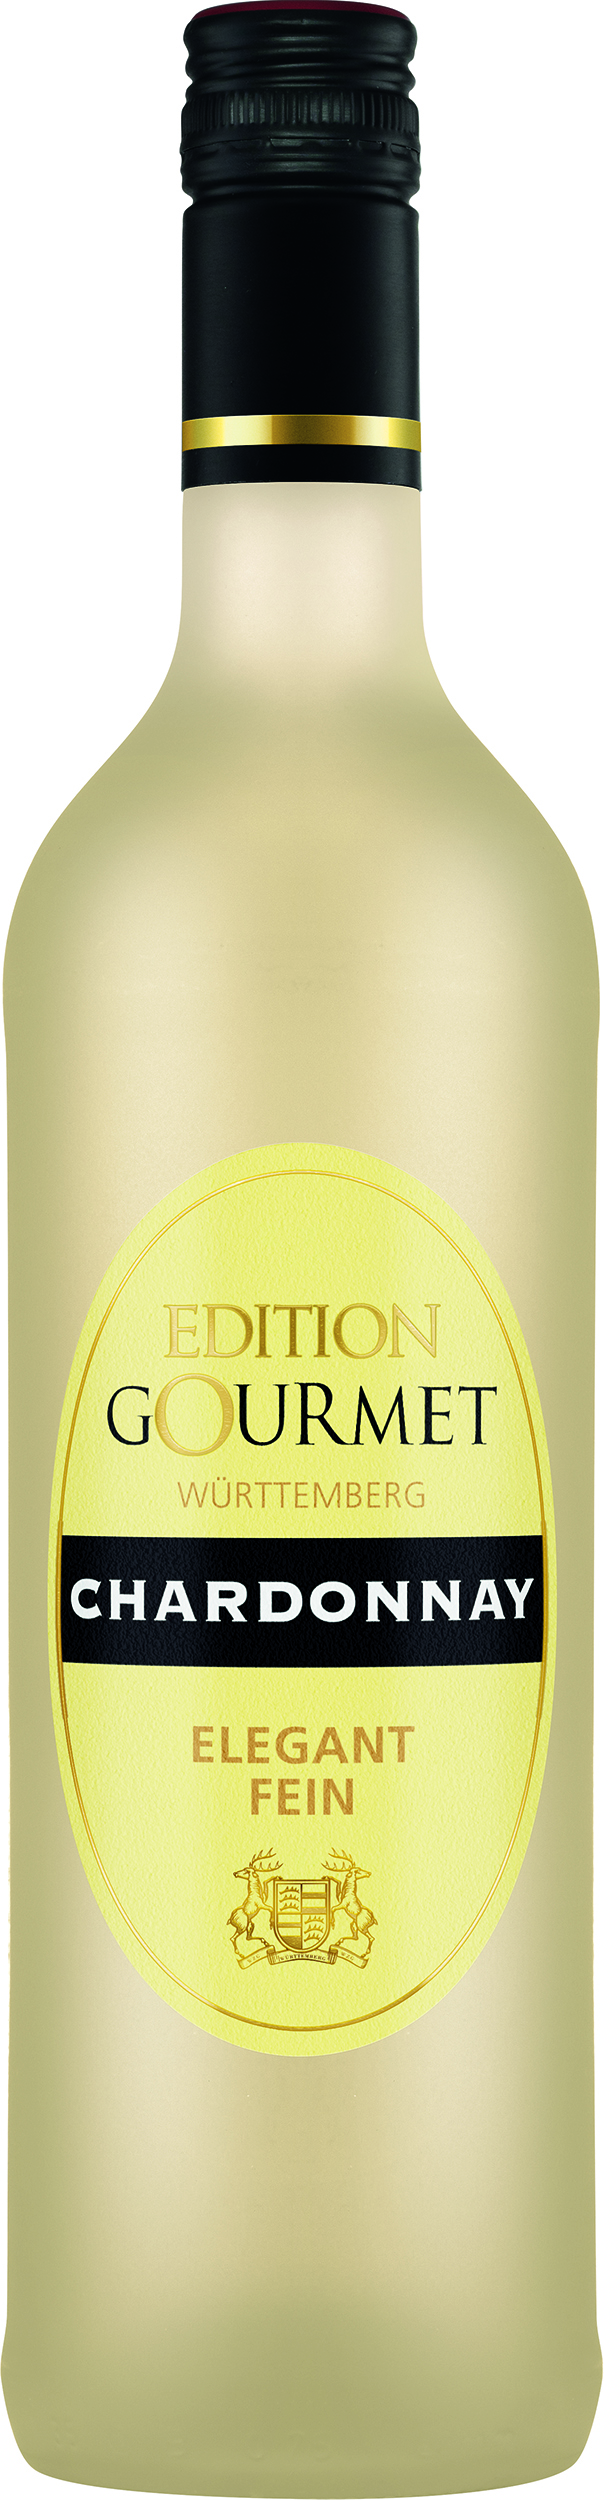 Chardonnay trocken 0,75 L Edition Gourmet ▻ WZG | Weine direkt vom Winzer -  Württemberger Weine